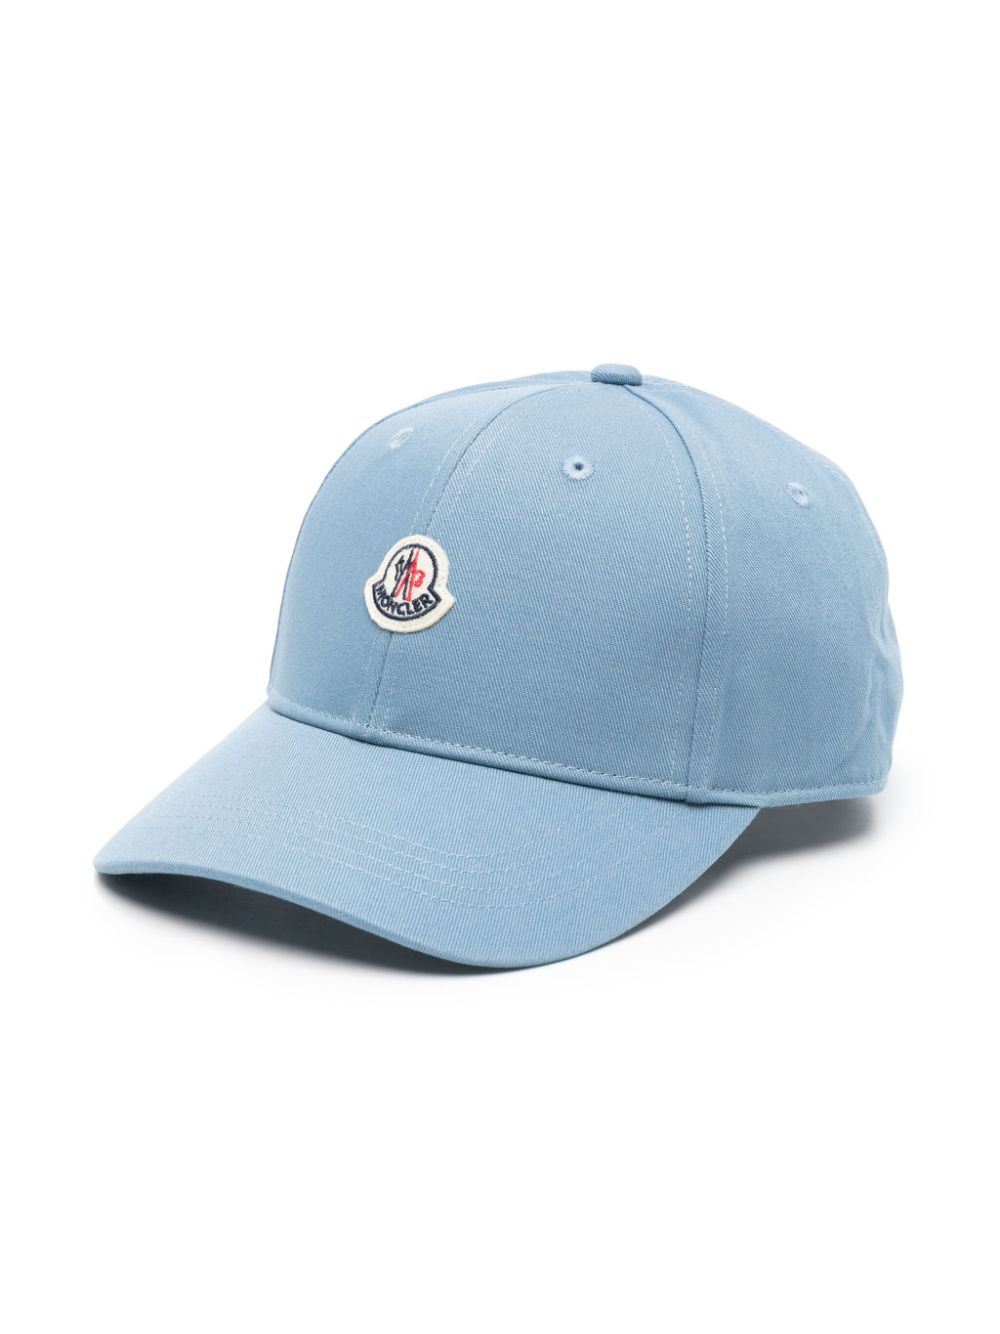 Light blue cap for children with logo